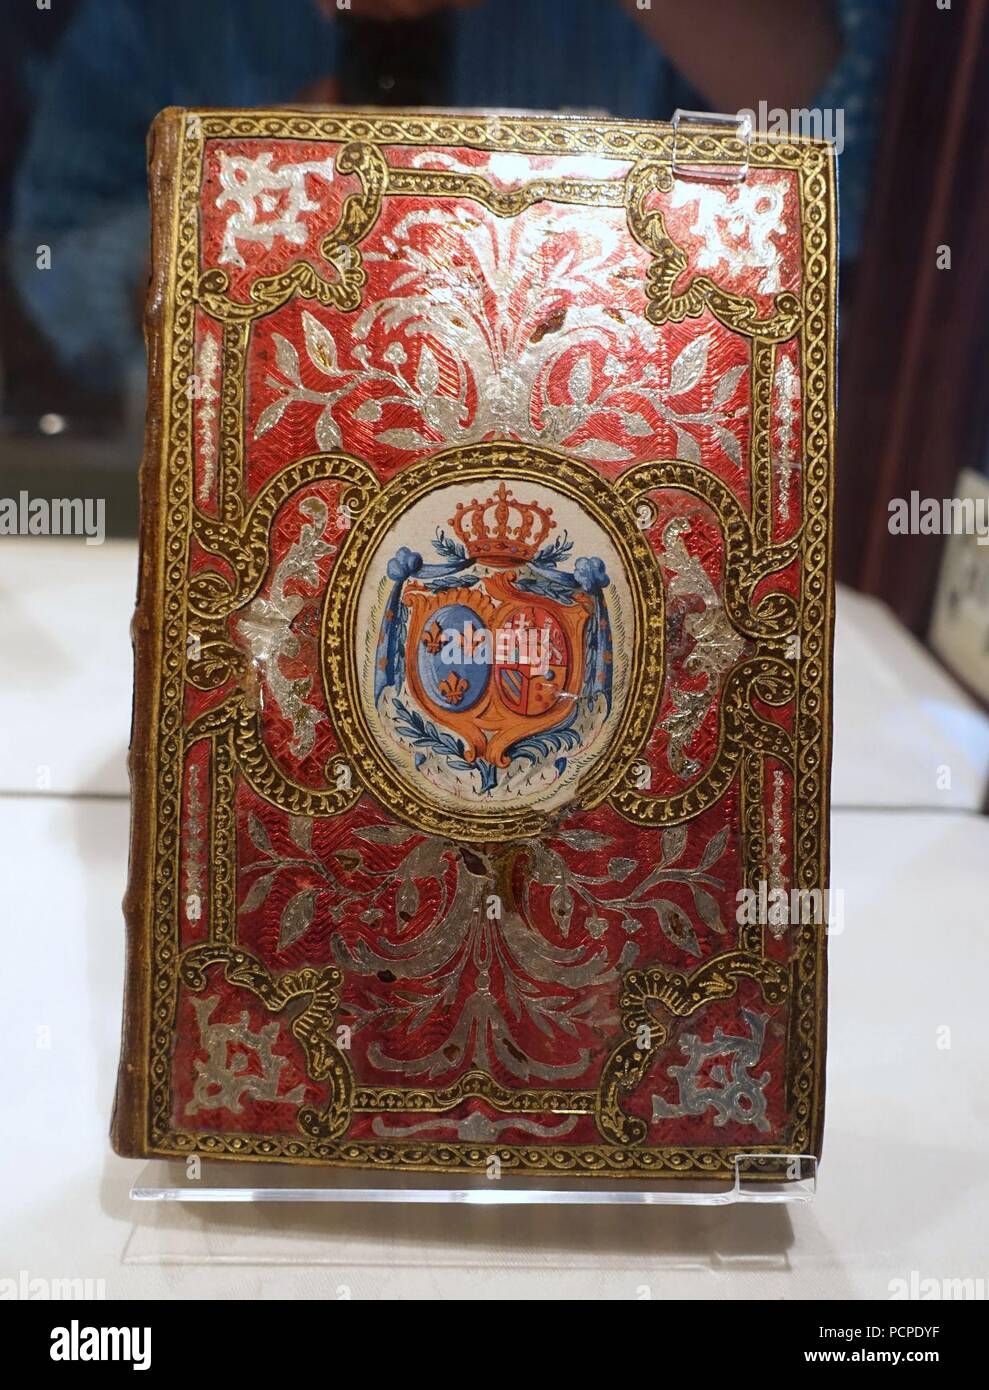 Almanach royal, Ifremer, MDCCLXXVIII Paris, Le Breton, 1777, administré par Marie-Antoinette dont les armes ornent le capot - Waddesdon Manor - Buckinghamshire, Angleterre - 07716. Banque D'Images